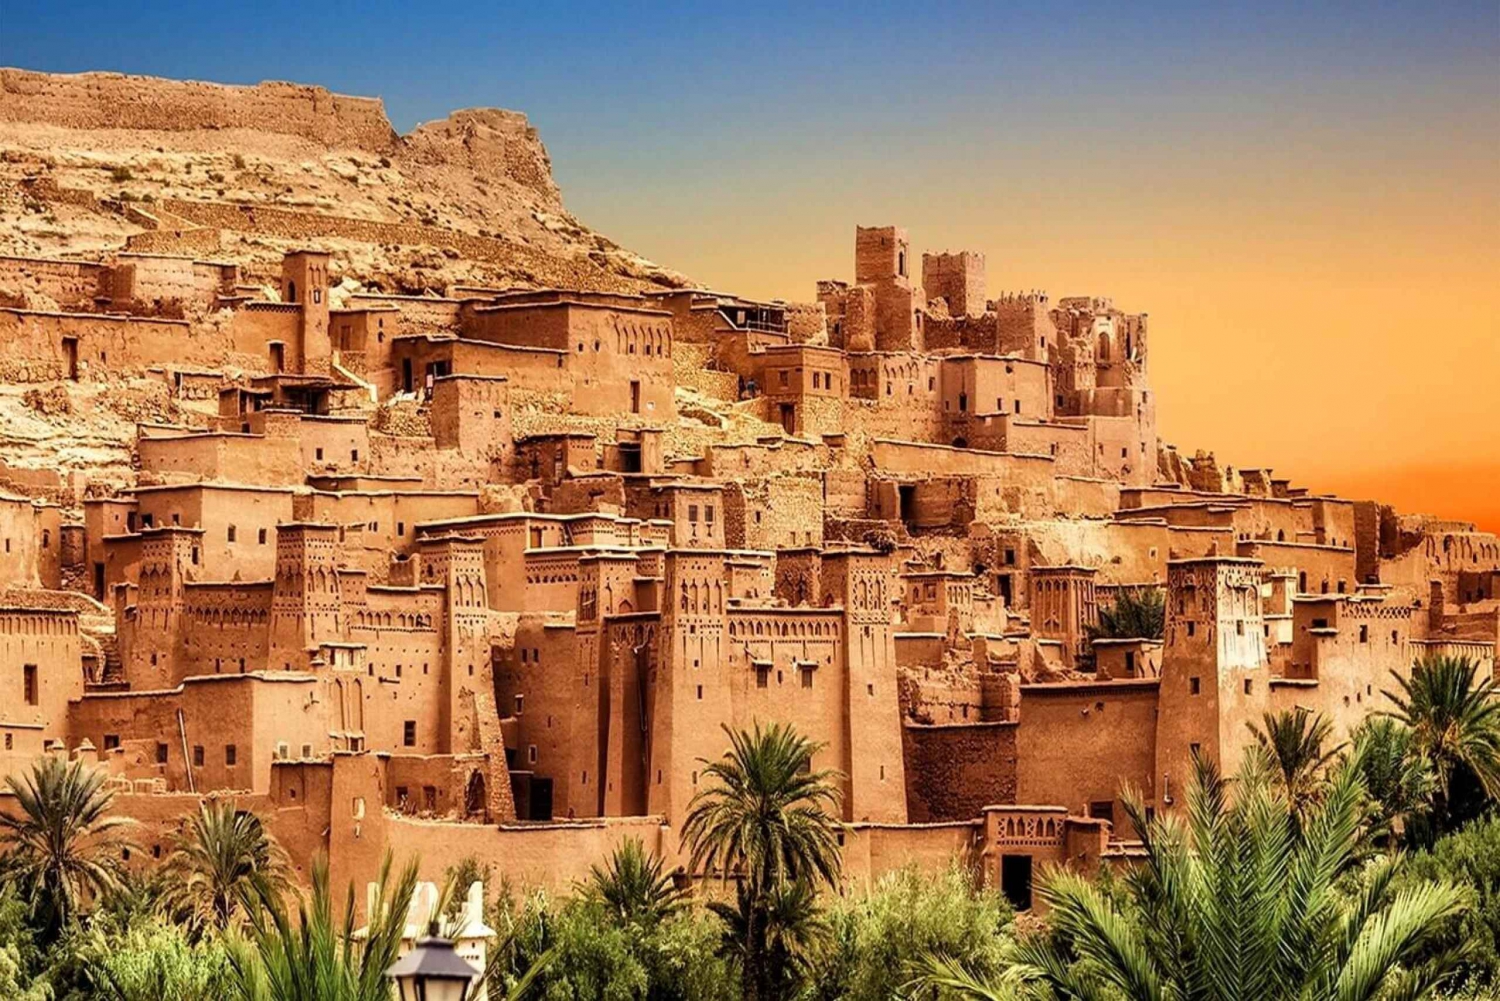 3 Day Luxury Desert Tour From Marrakech To Merzouga